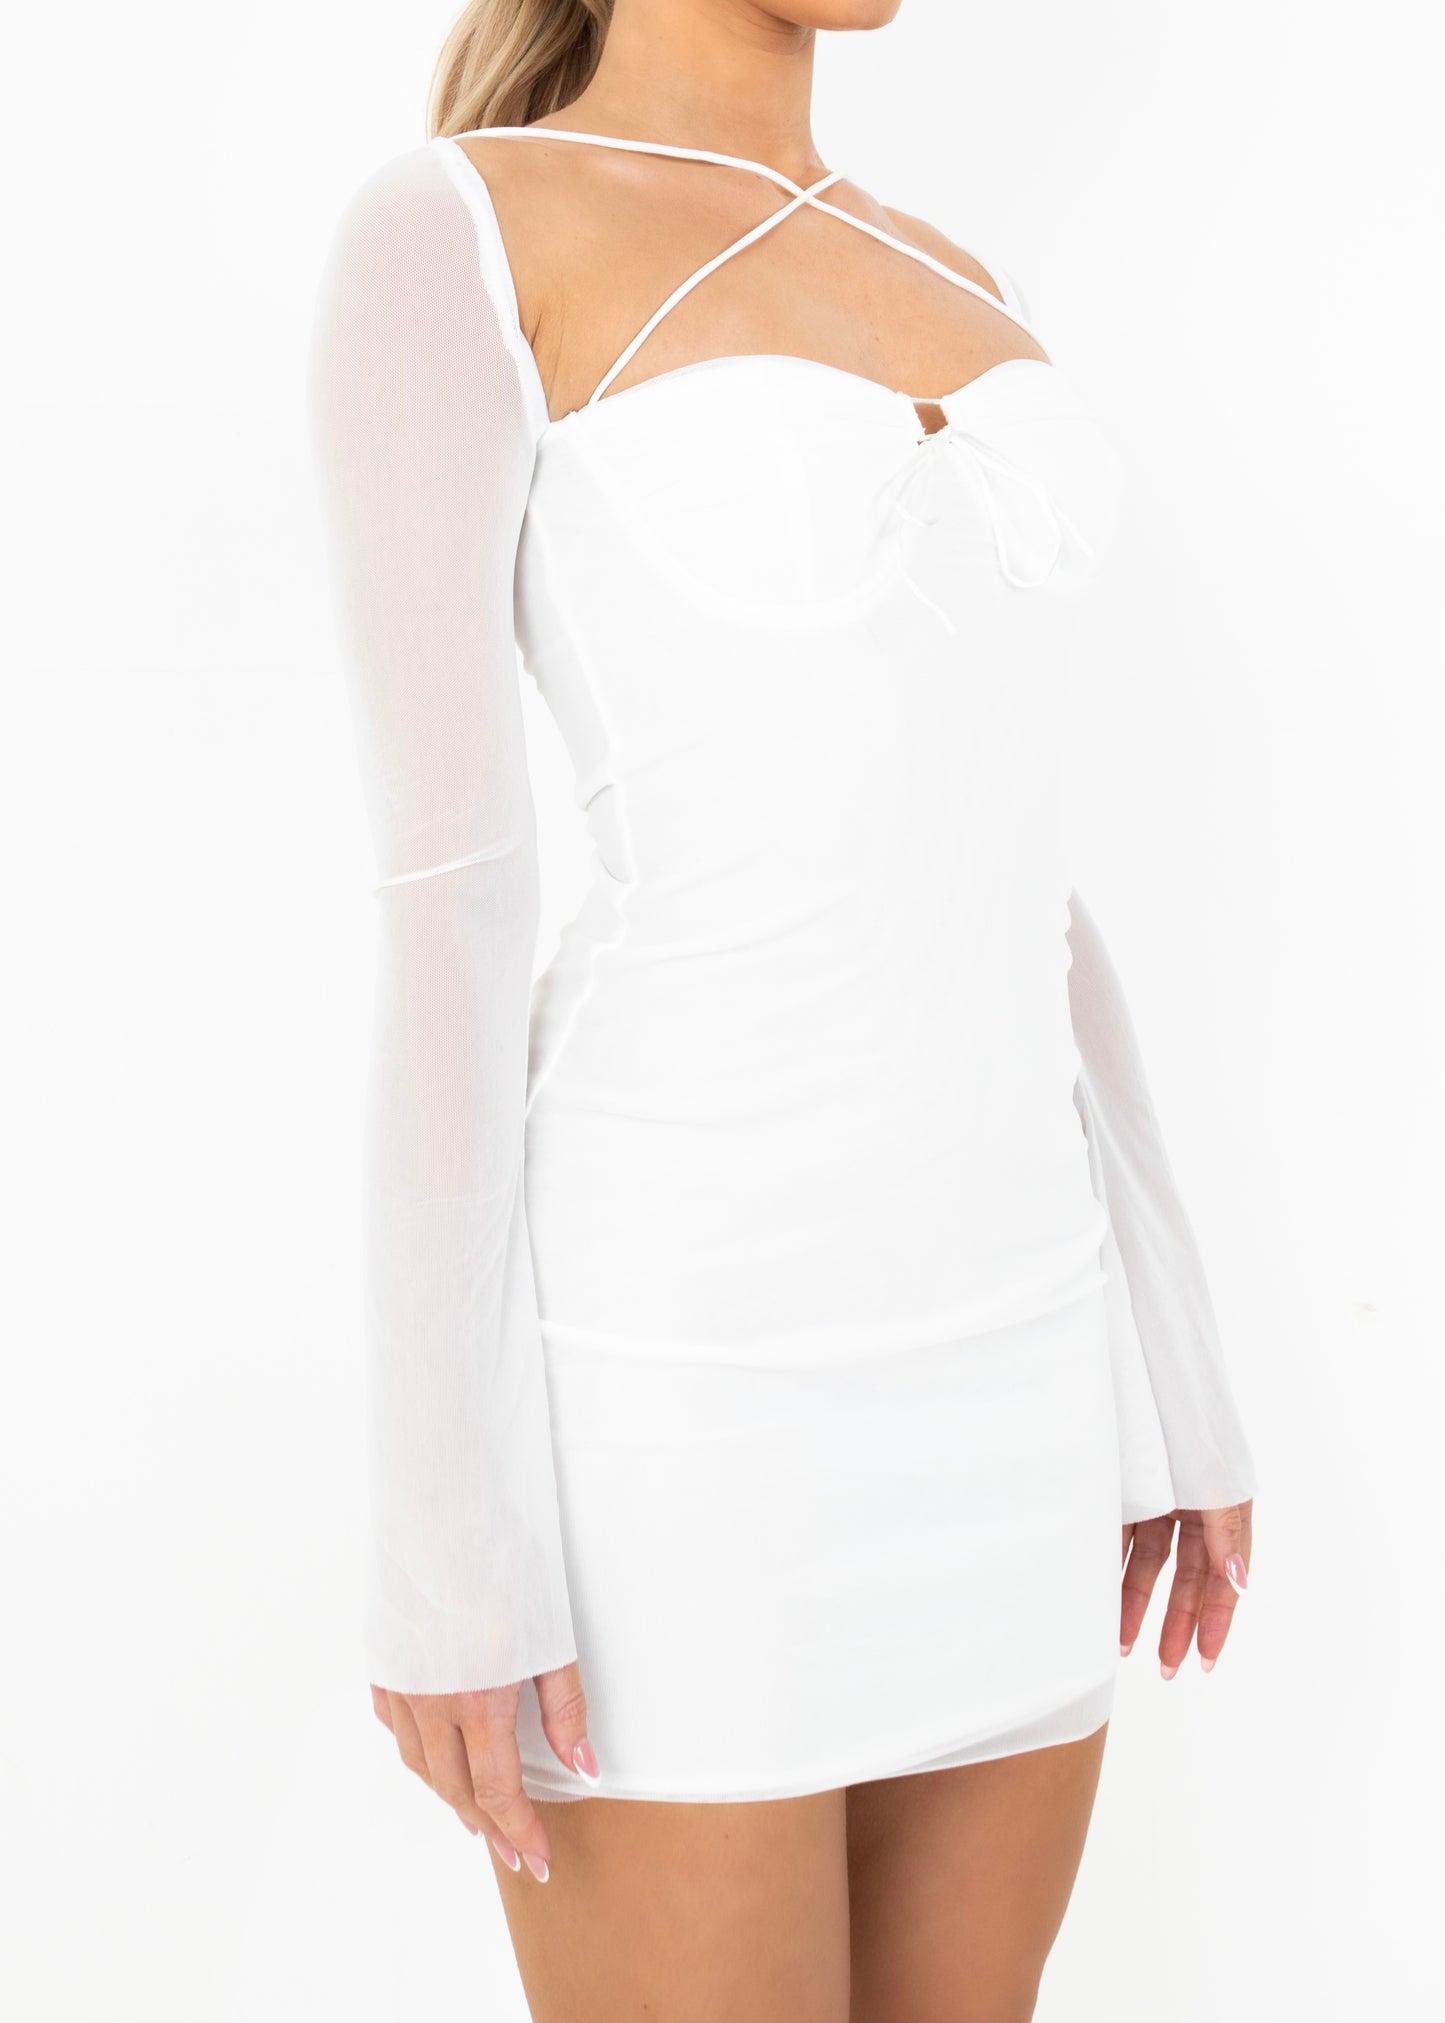 CATERINA - White Bodycon Mini Dress